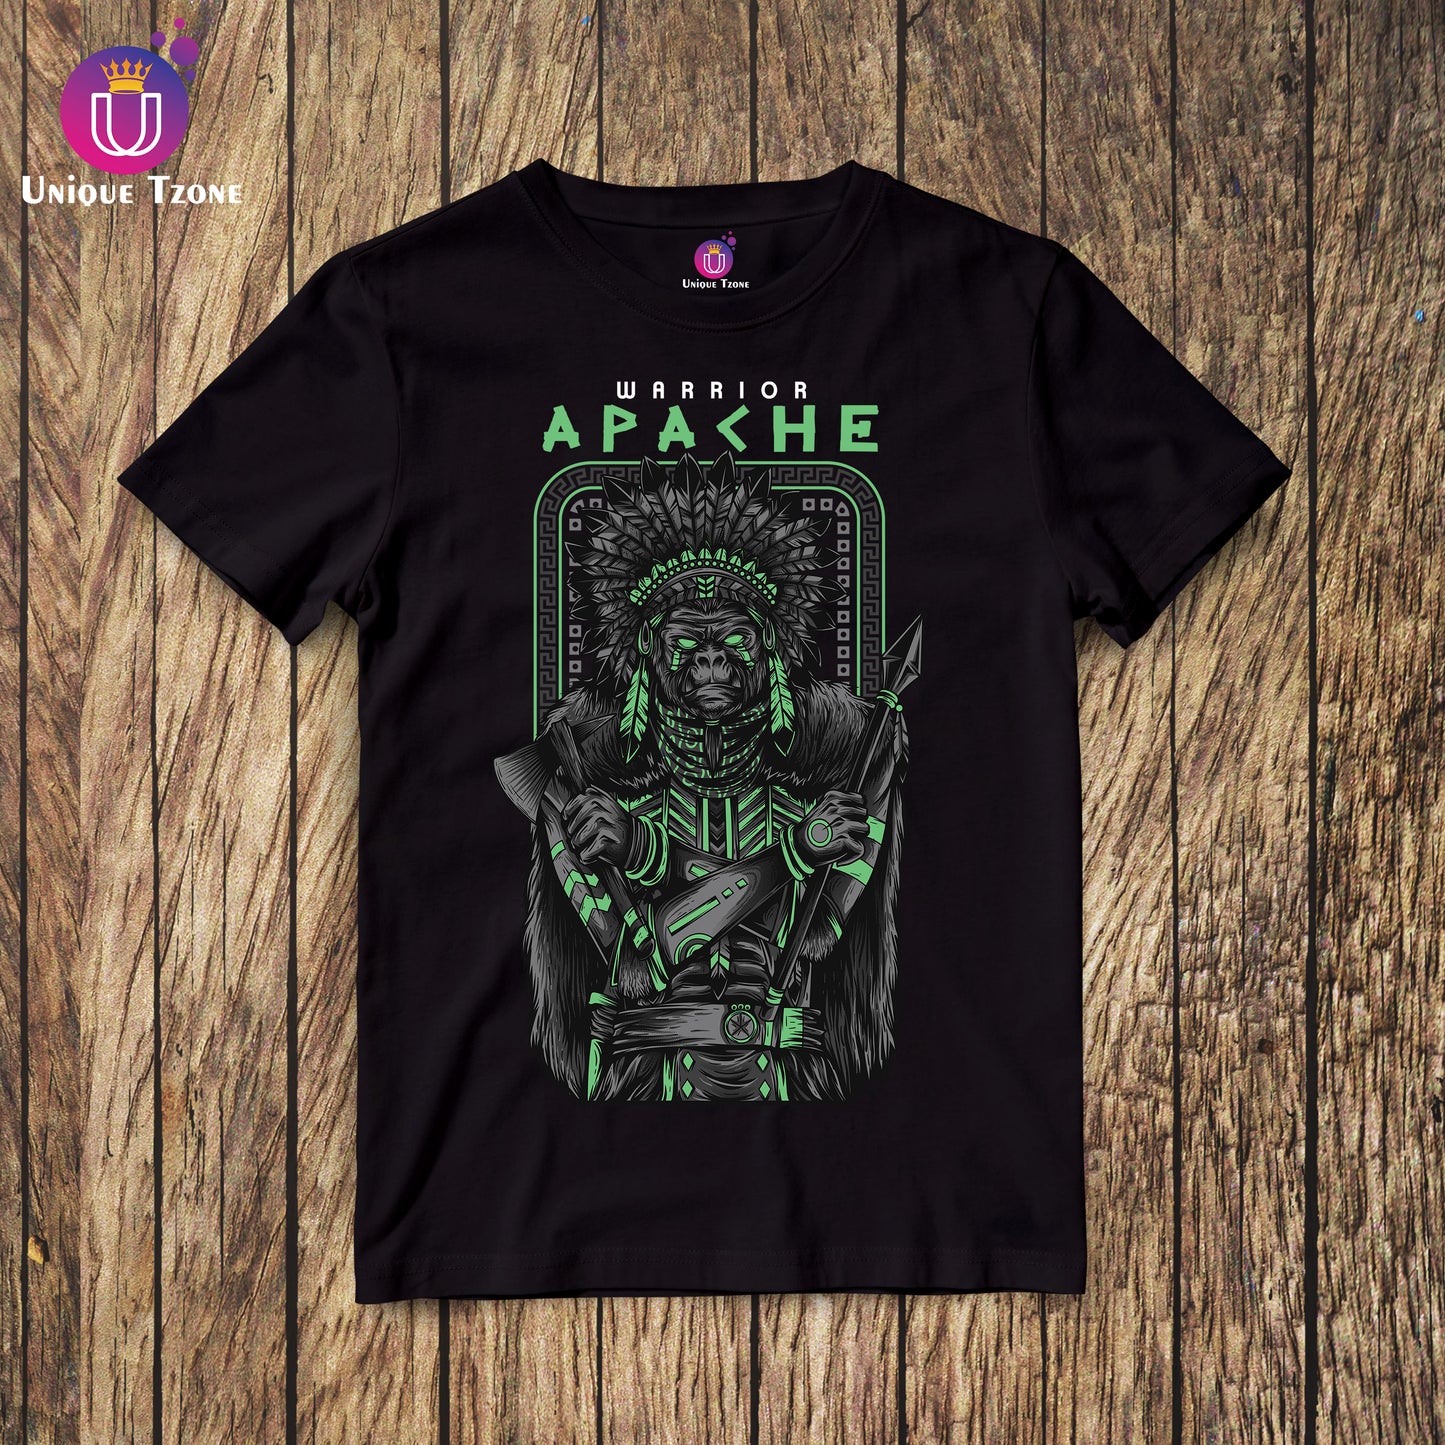 Apache : The Warrior Premium Graphics Half Sleeve Round Neck Unisex Cotton T-shirt